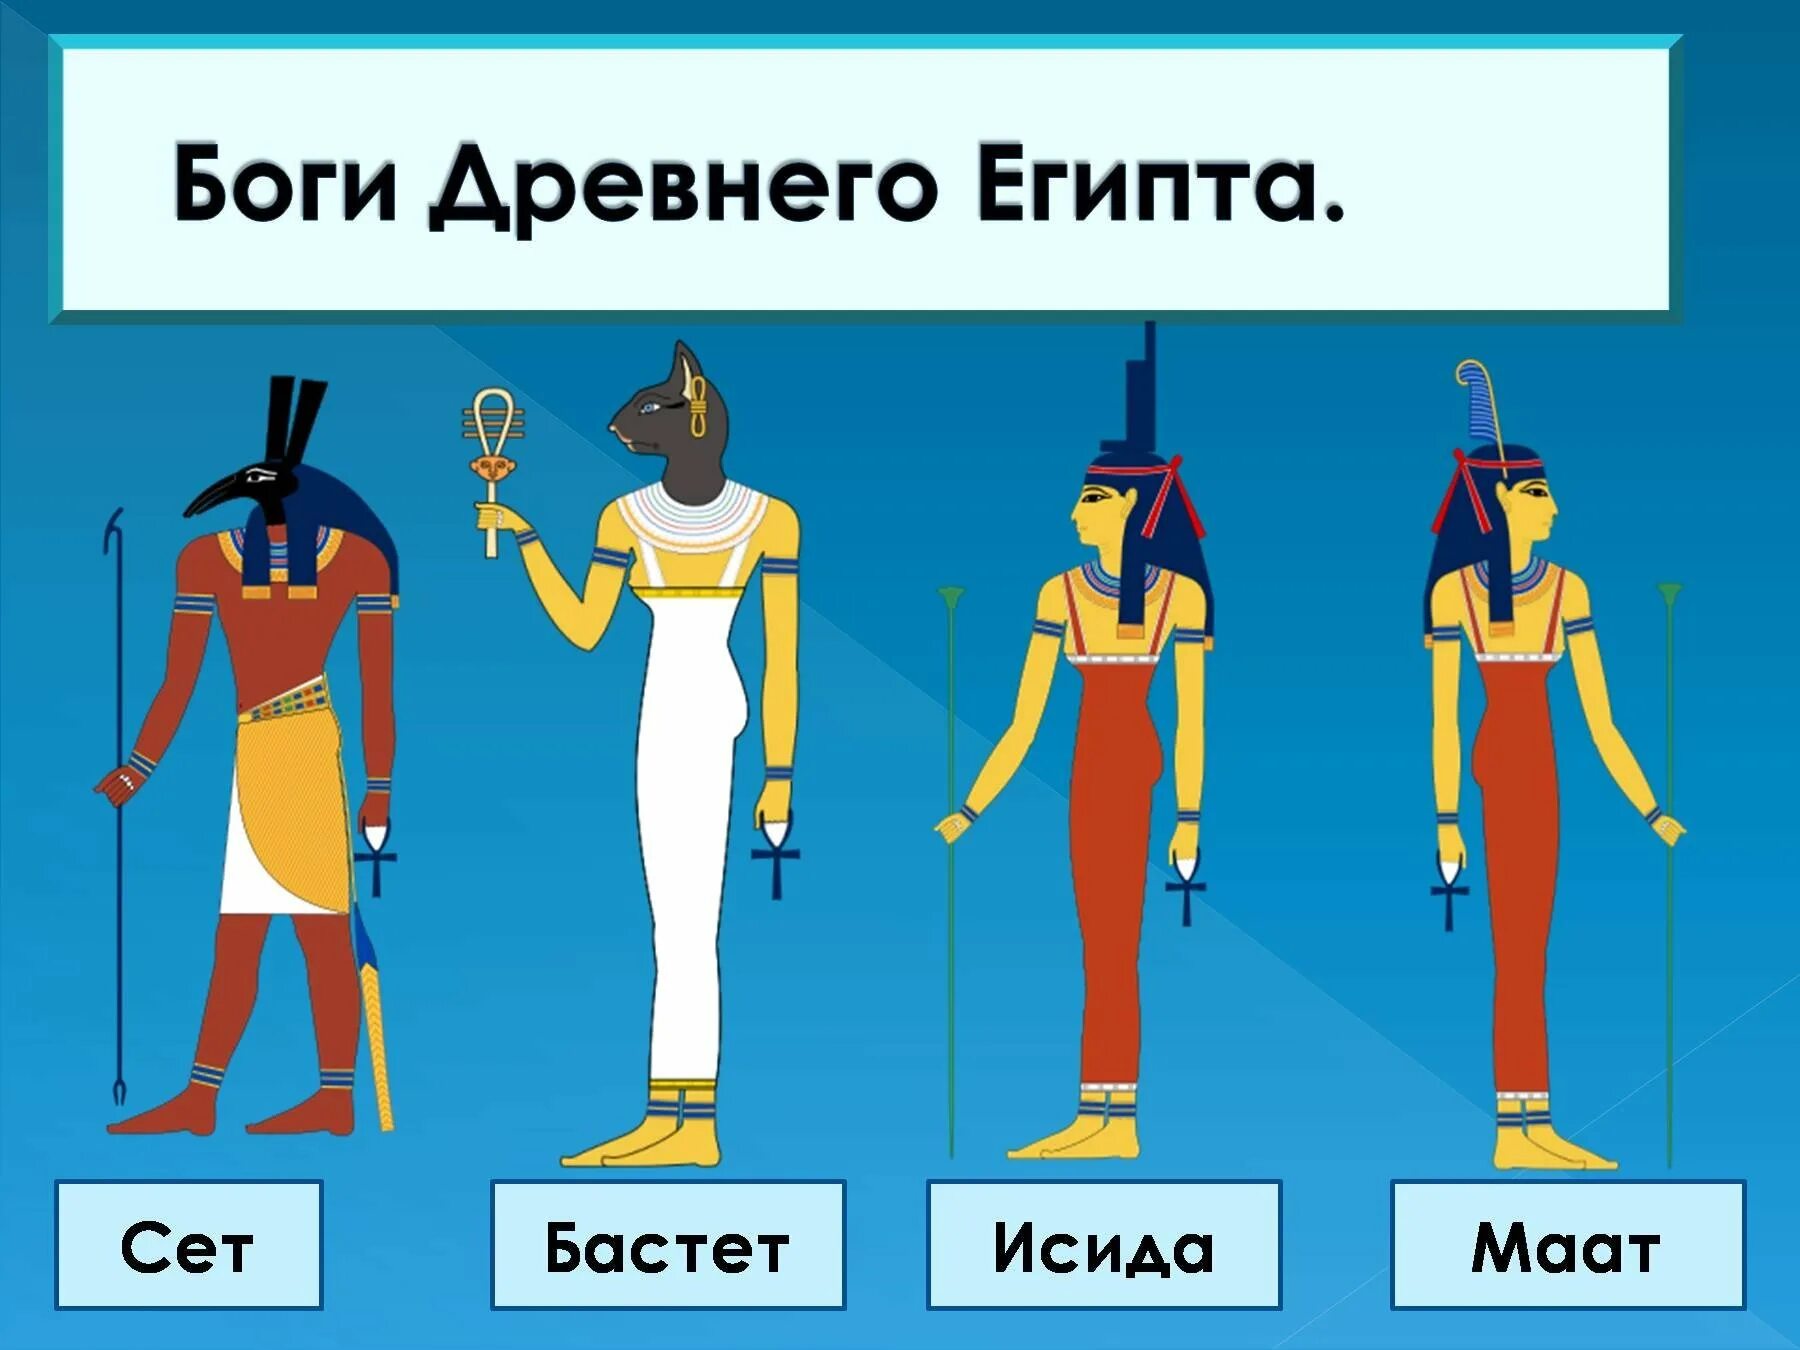 3 боги египта. Таблица древних богов Египта древнего. Пантеон египетских богов 5 класс.